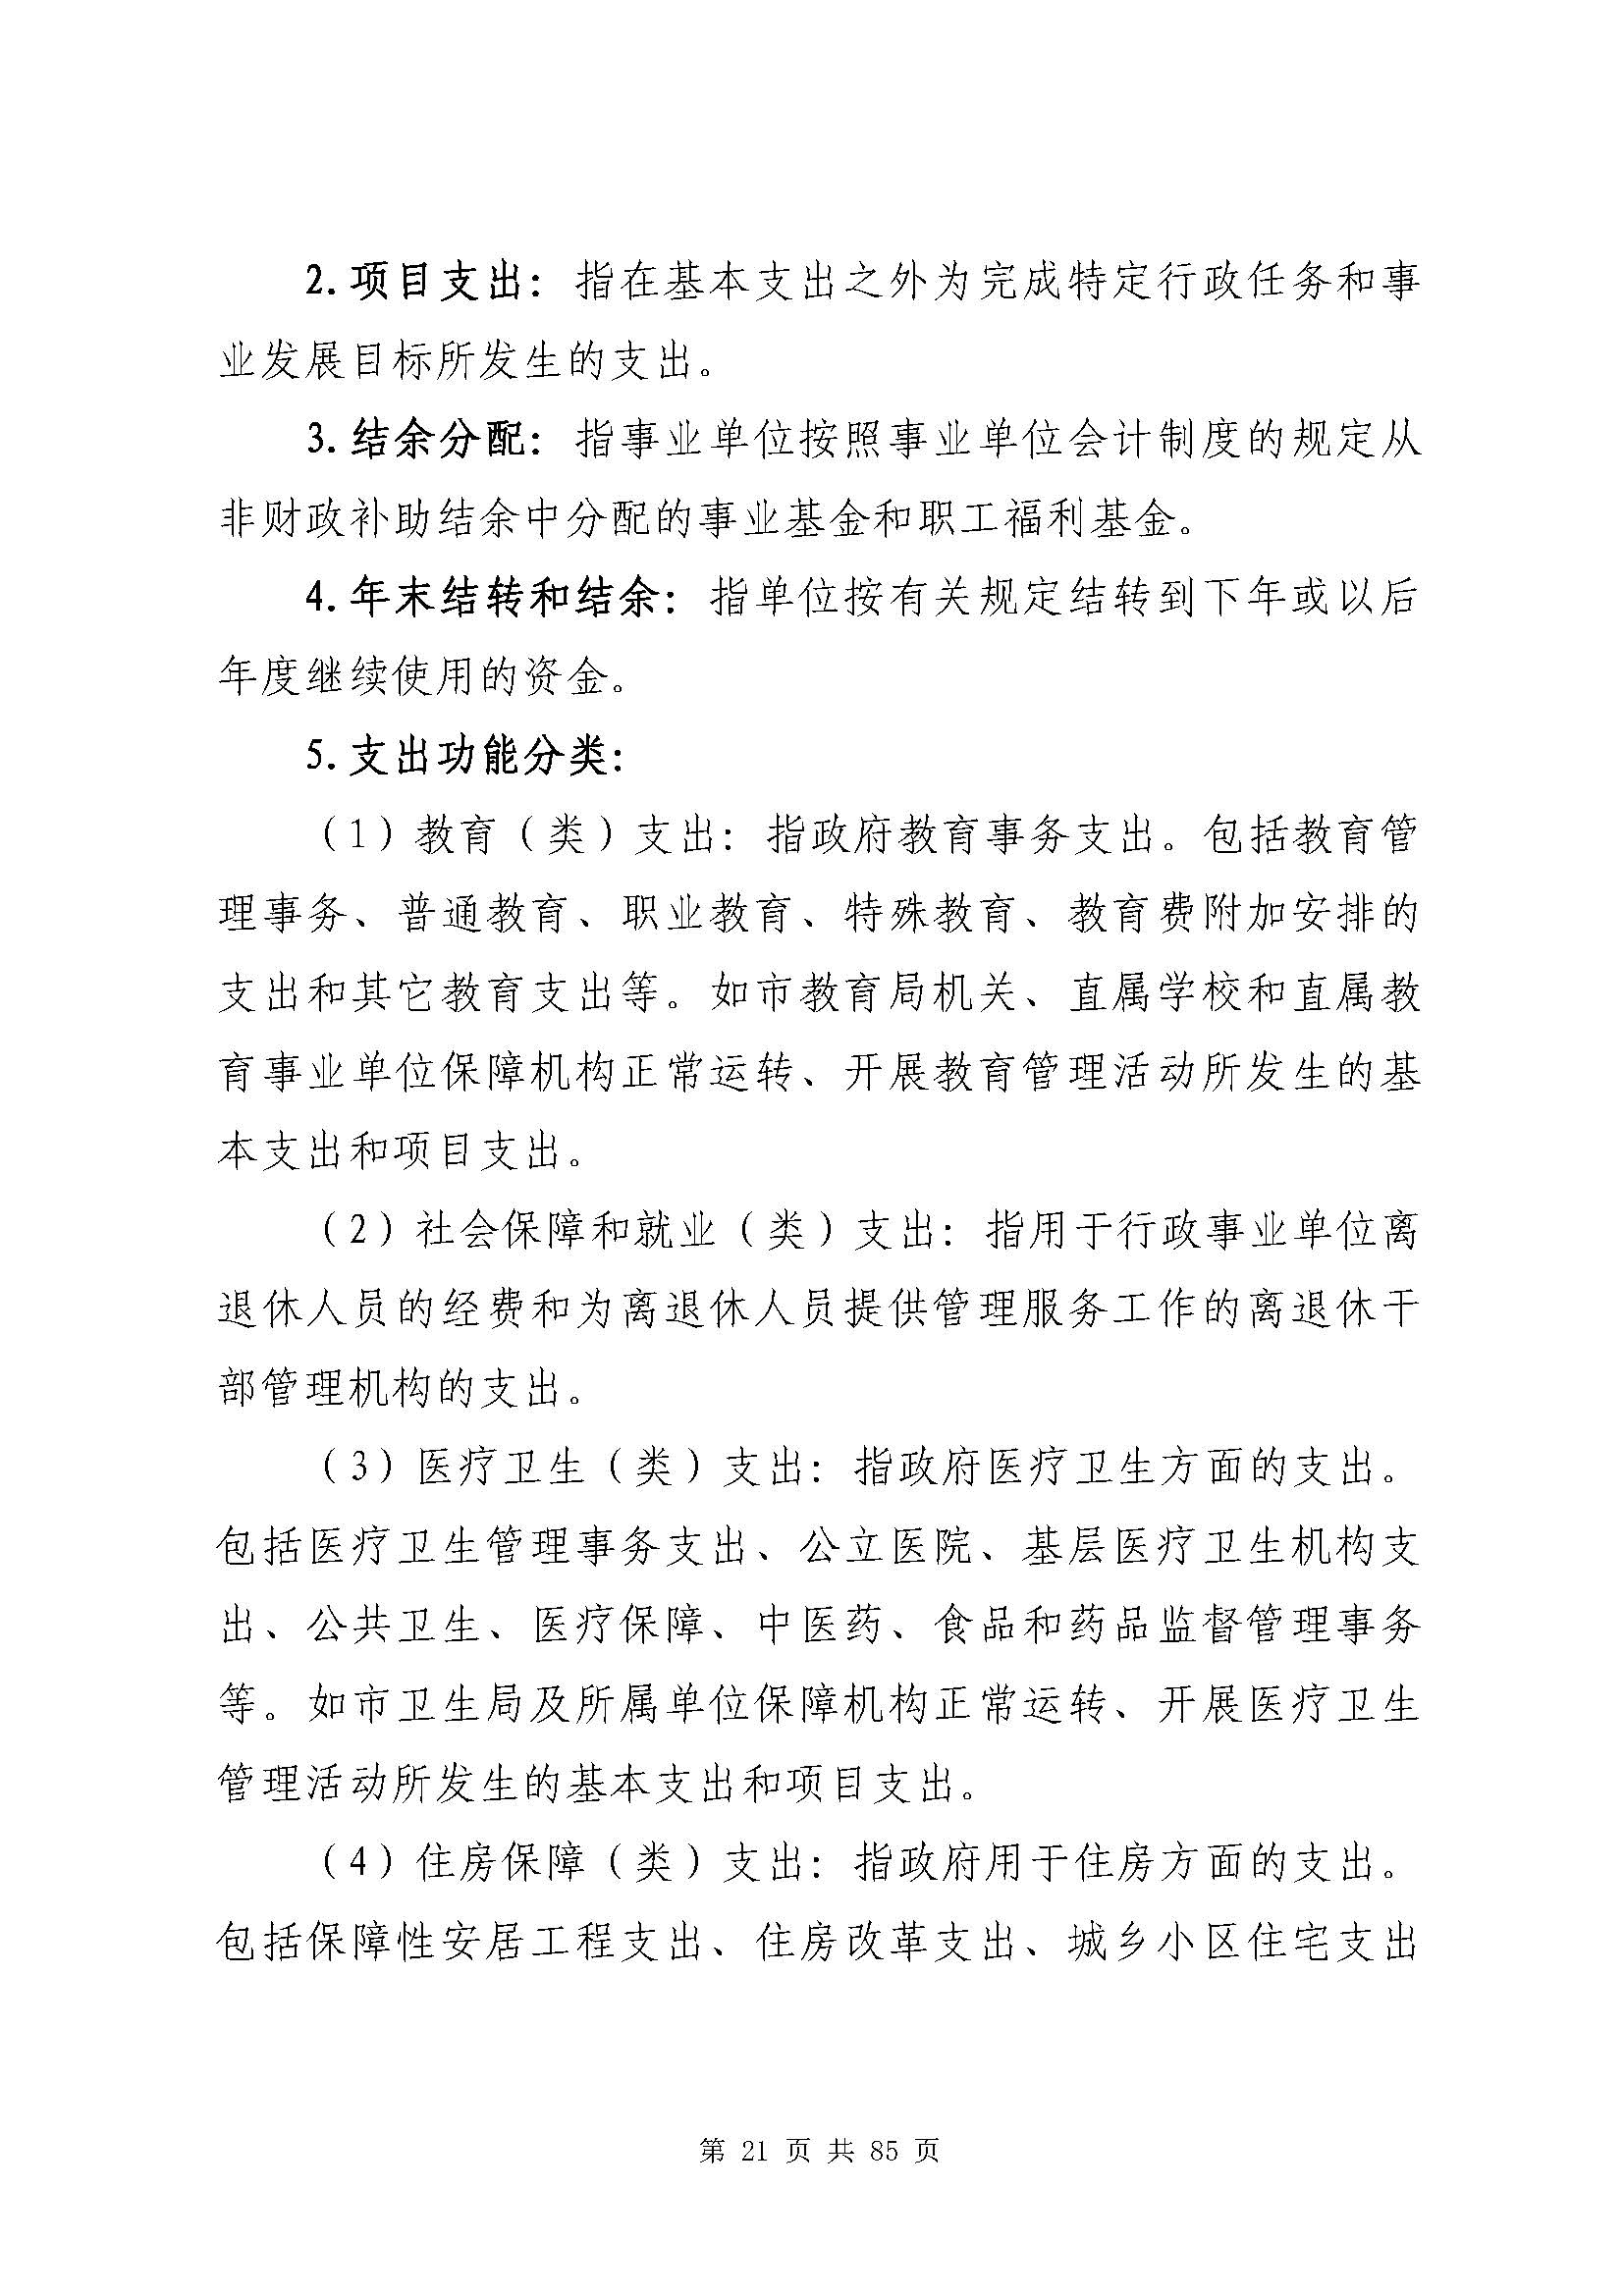 深圳市招生考试办公室2020年度部门决算_页面_22.jpg